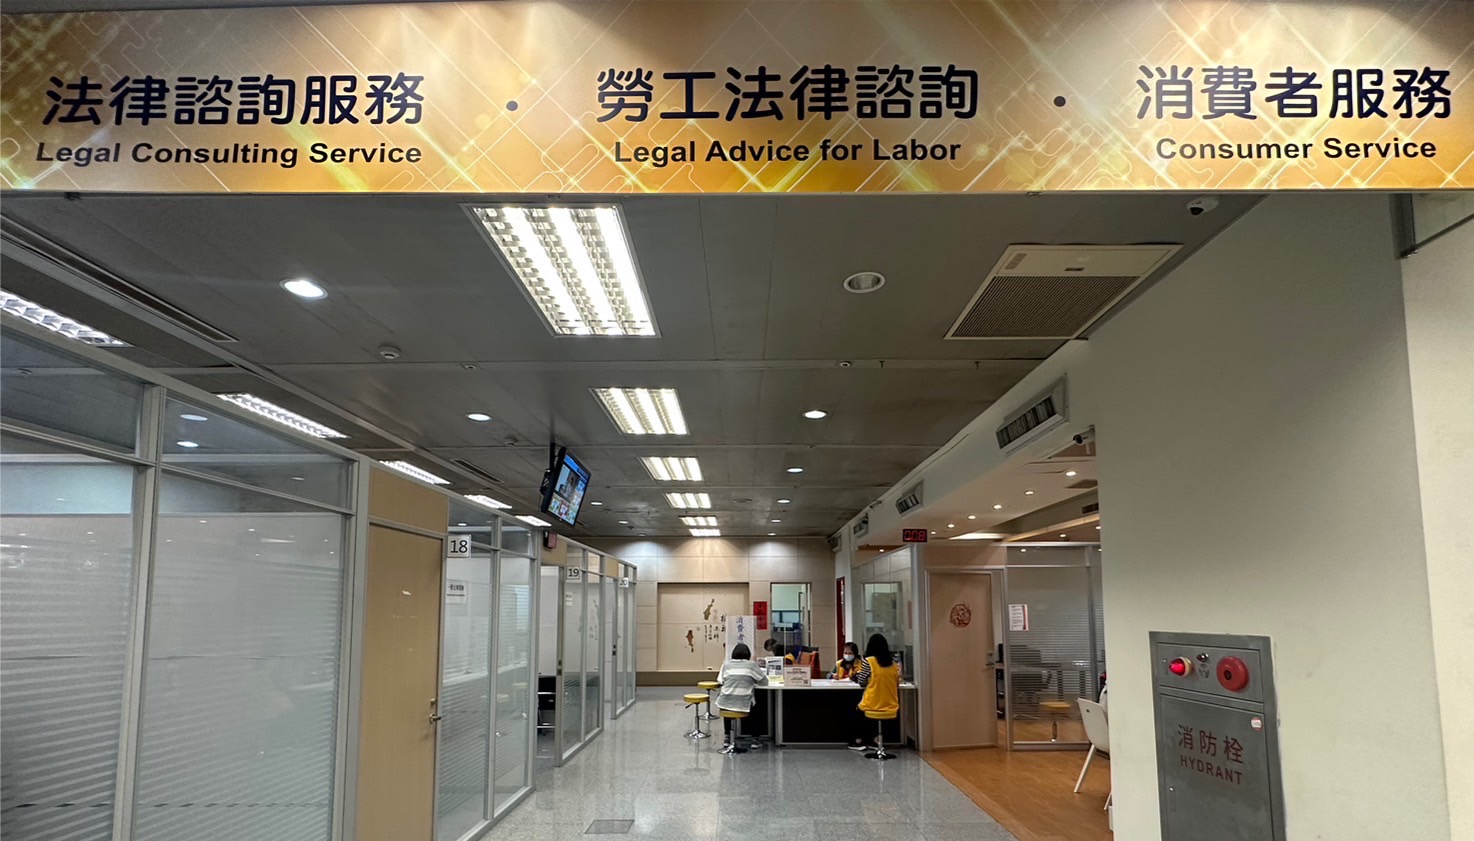 法律諮詢服務、勞工法律諮詢、消費者服務